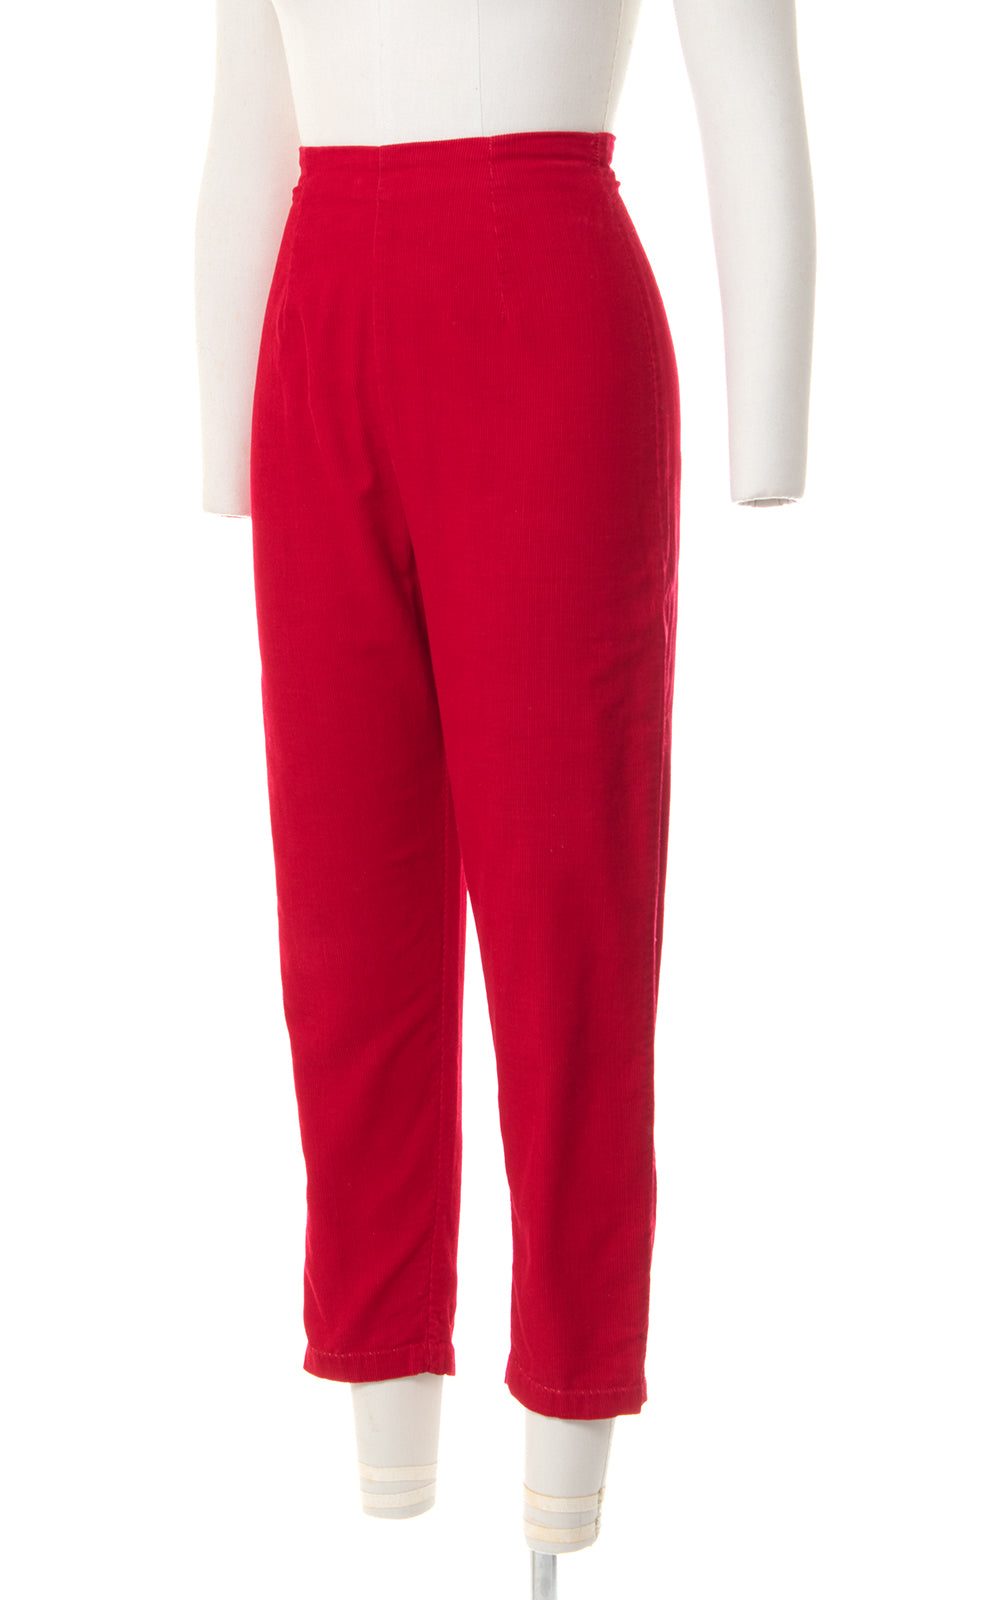 1950s Red Corduroy Capri Pants